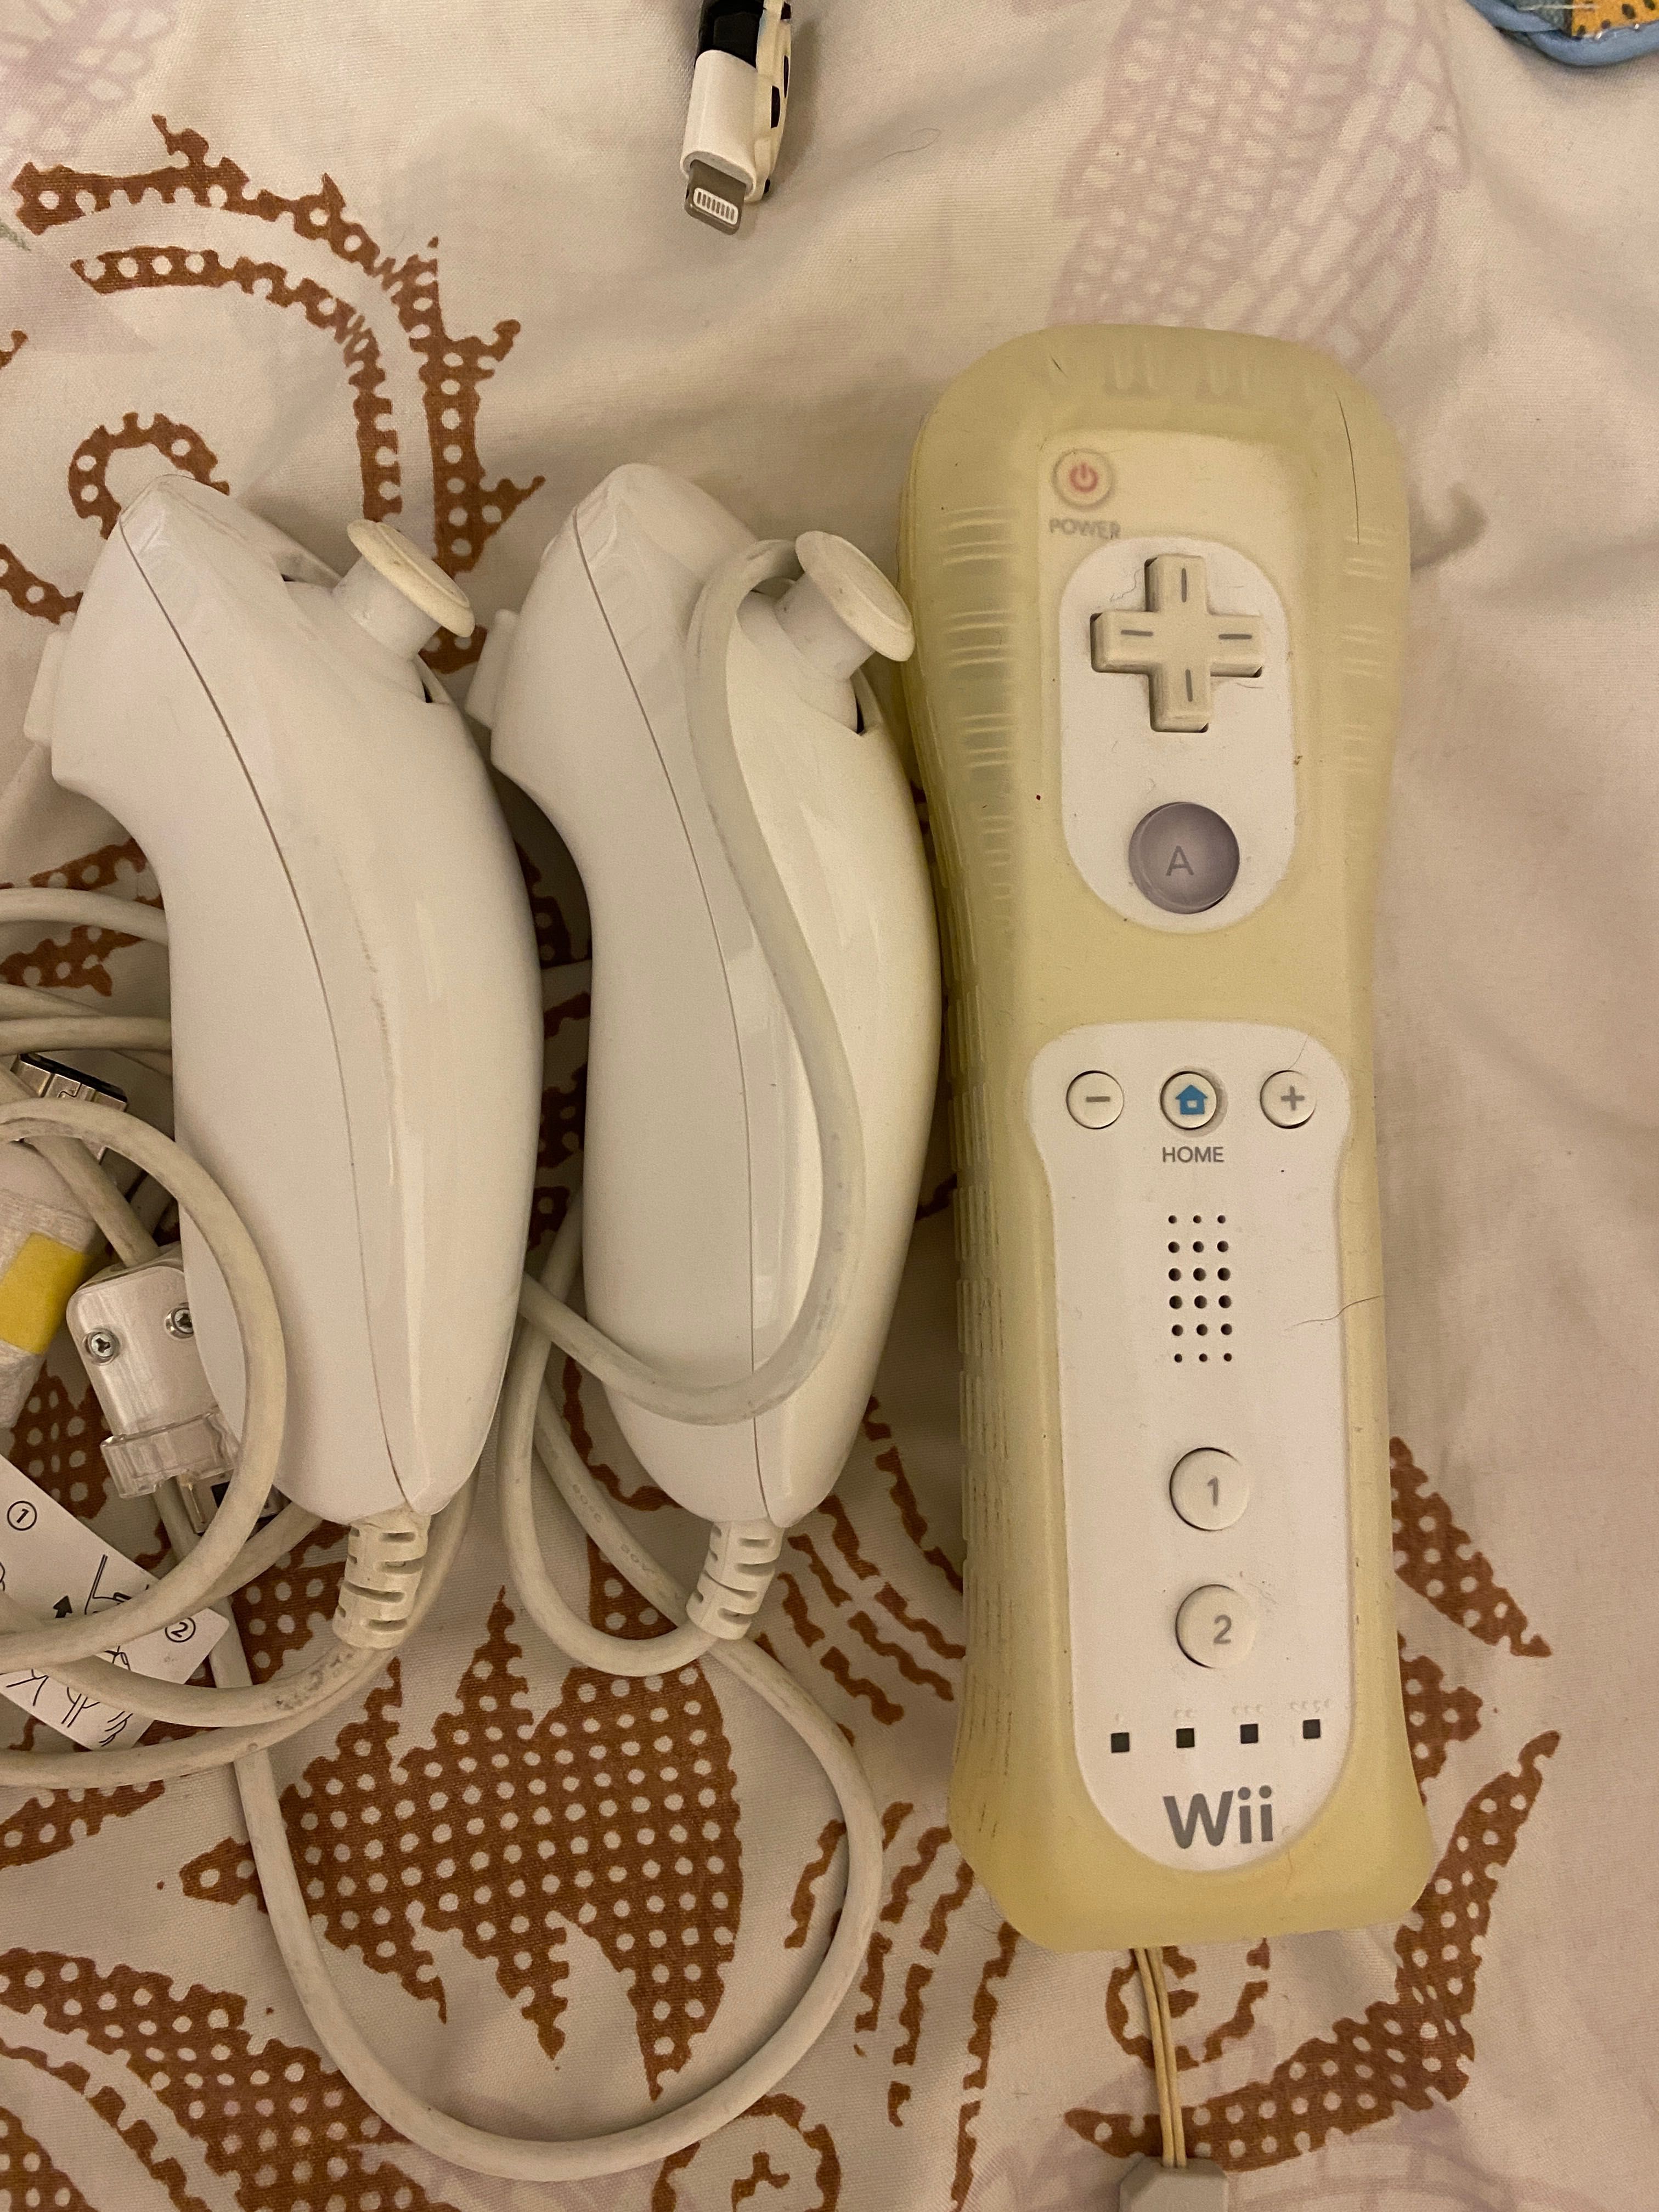 Продам контроллеры для Nintendo Wii цена за все. Remote, нунчак